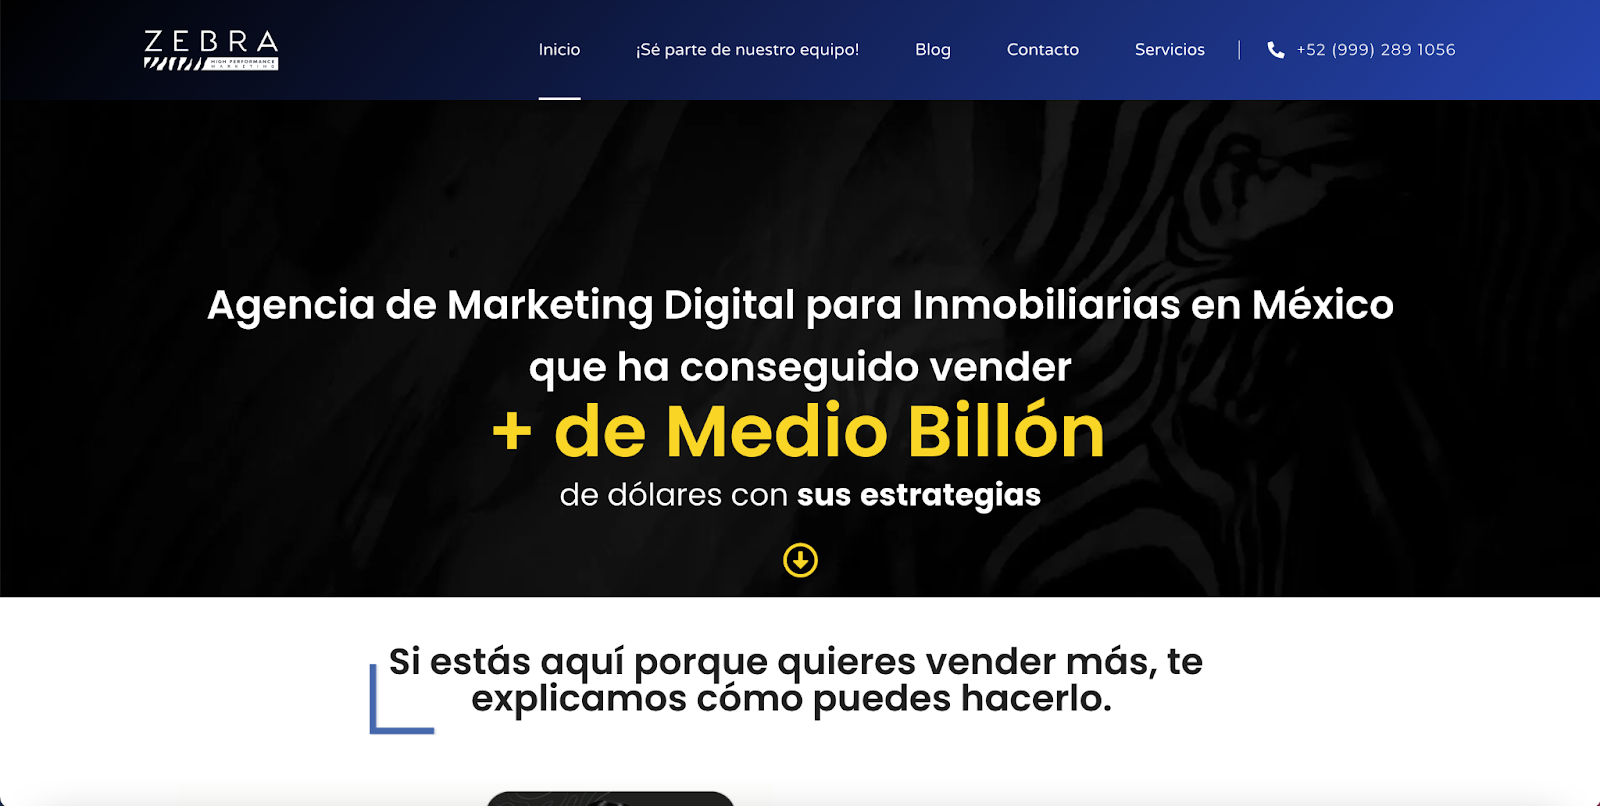 Zebra es una gran agencia de marketing digital especializada en bienes raíces